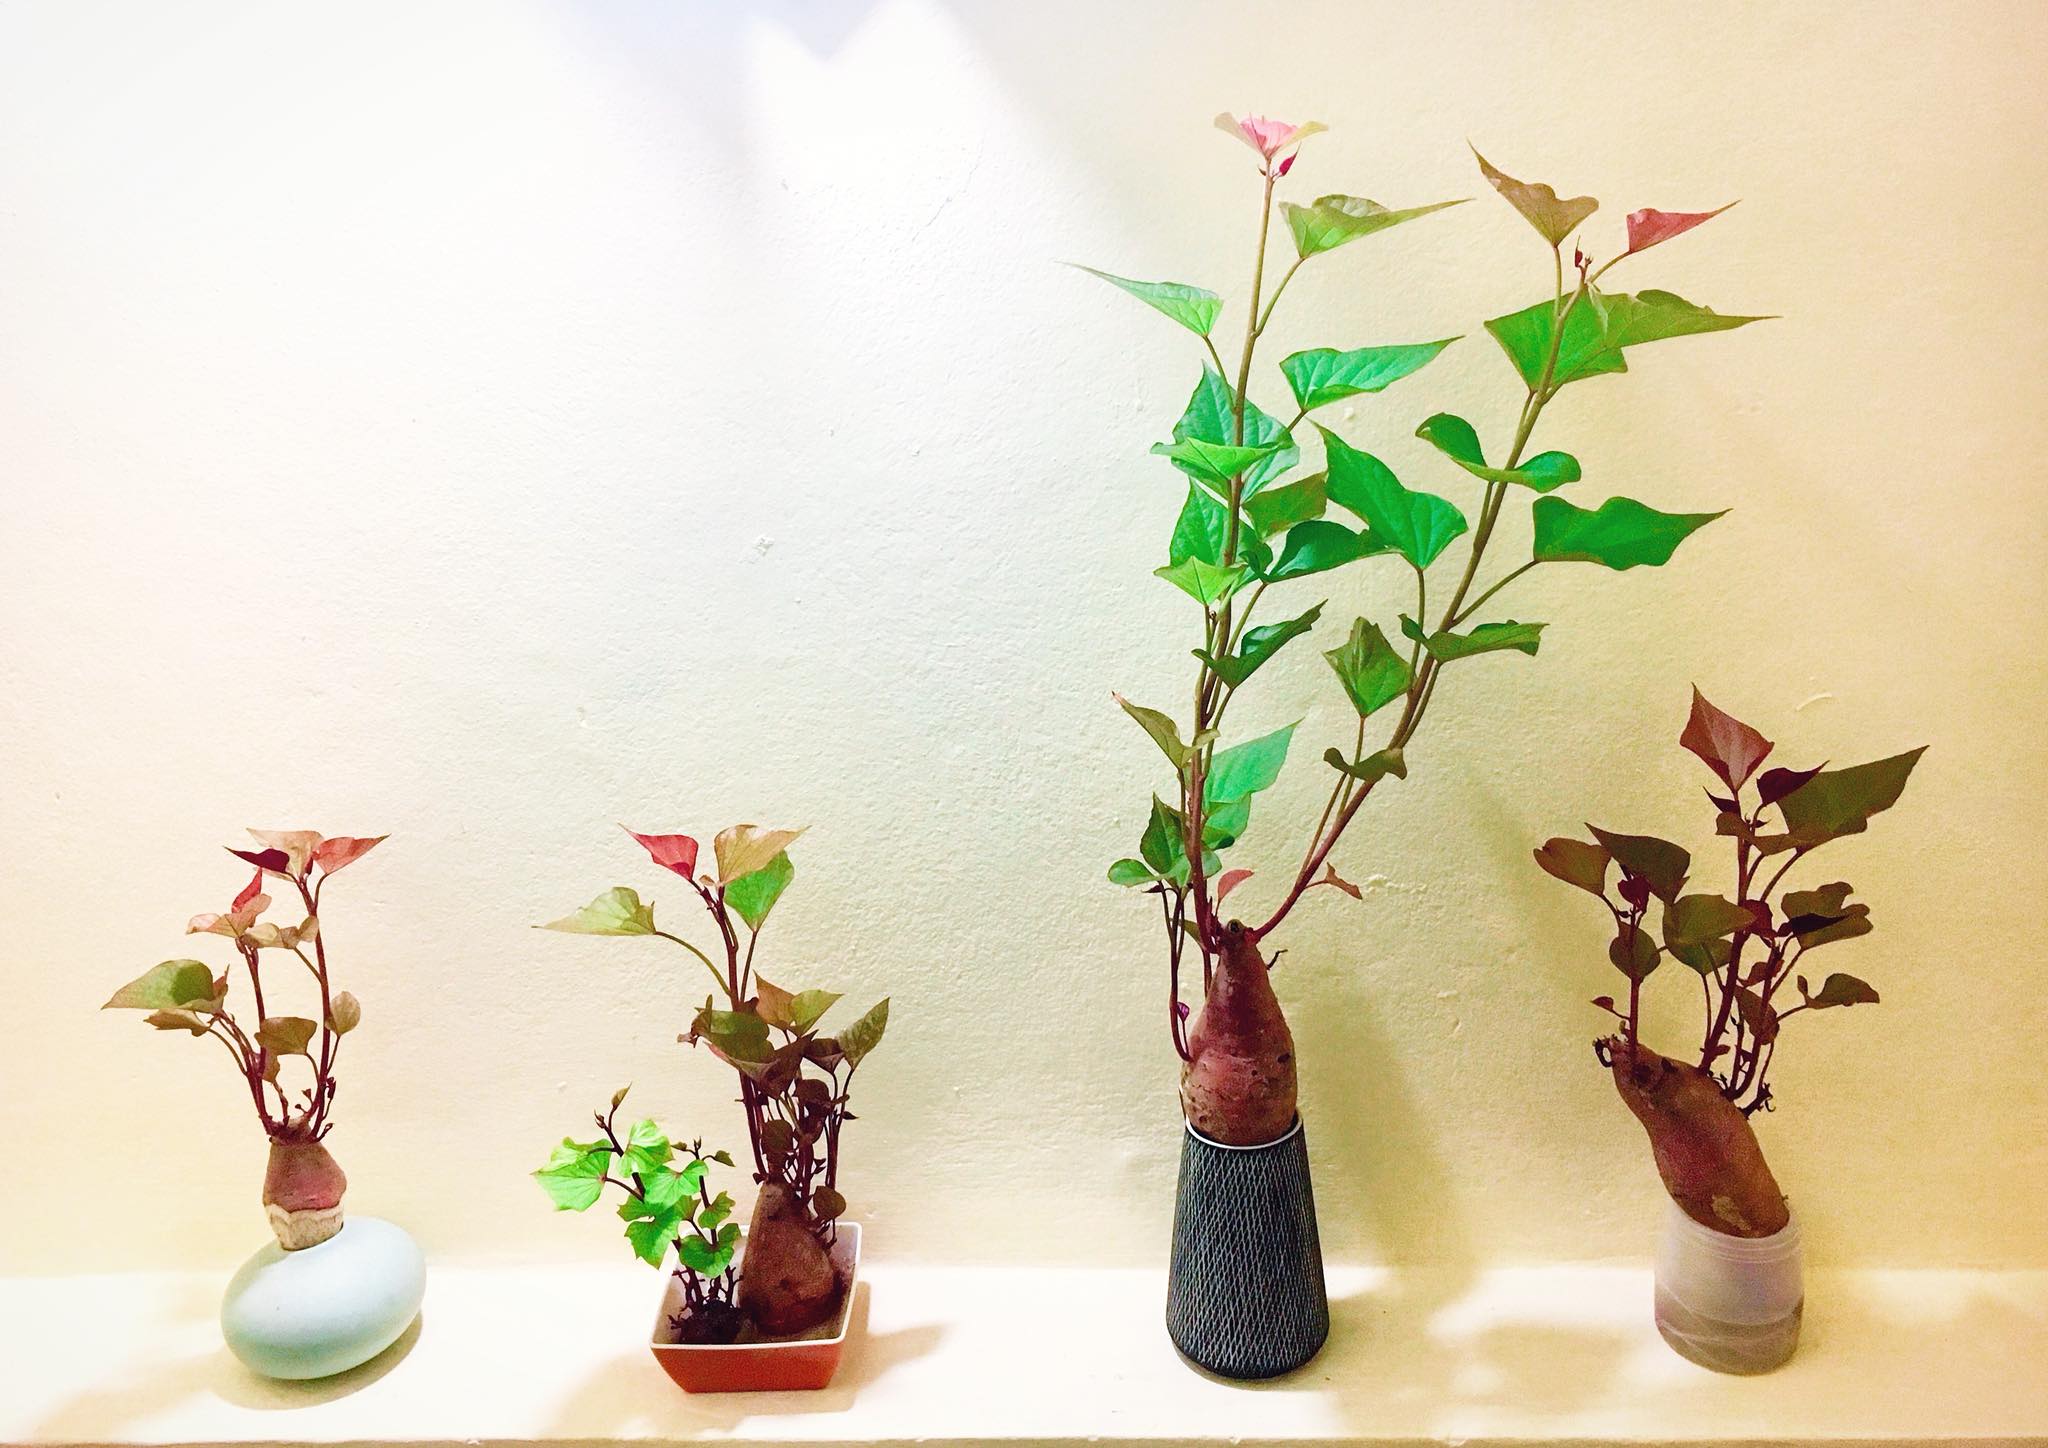 Trồng khoai lang bonsai làm đẹp nhà với các bước dễ vô cùng mà nói ra ai cũng sẽ làm được - Ảnh 1.